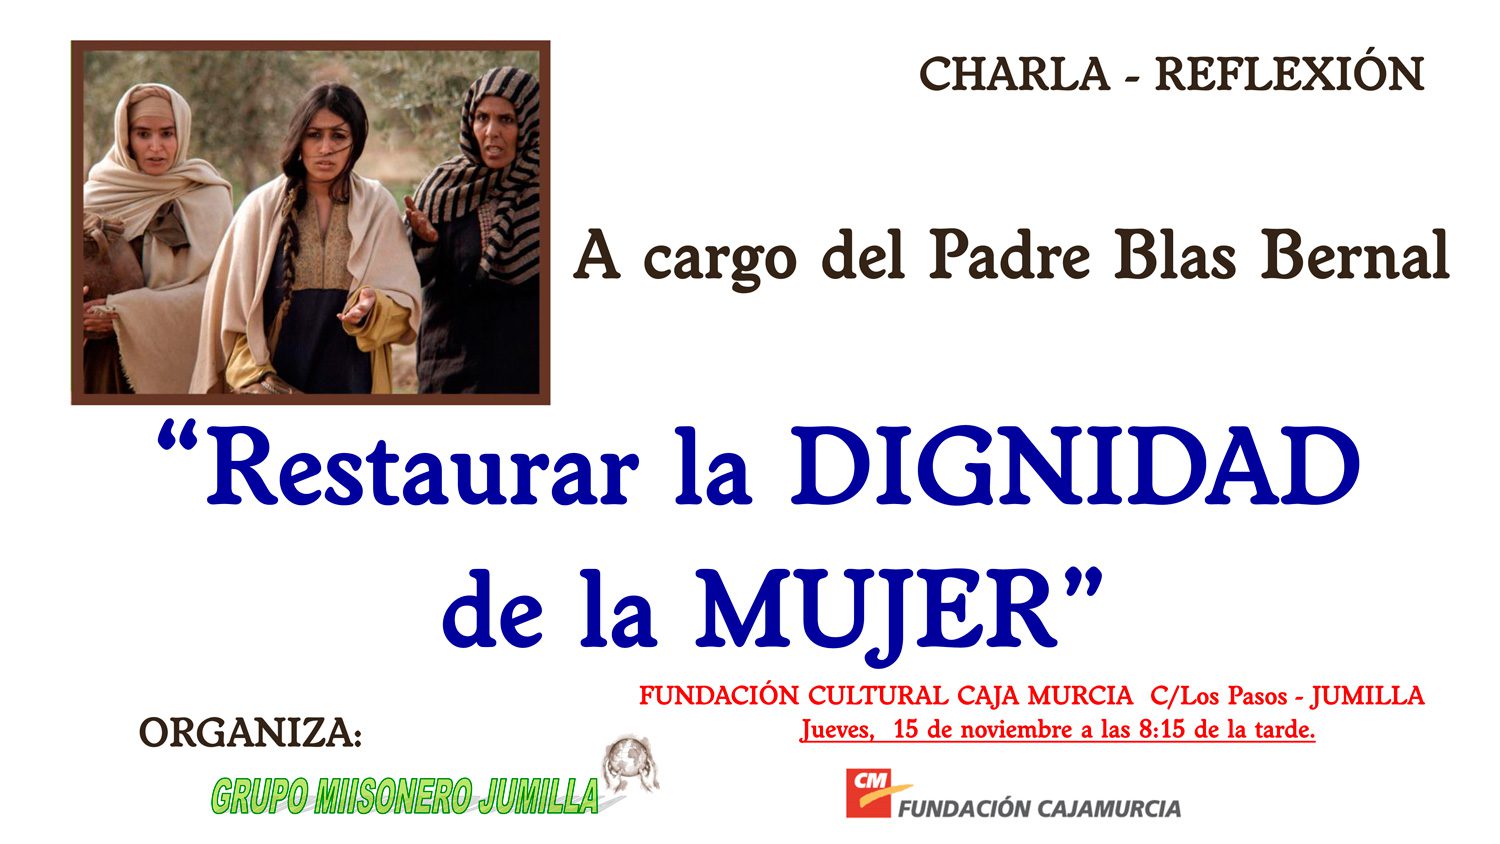 Este jueves va a tener lugar una nueva charla del padre Blas Bernal sobre ‘La dignidad de la mujer’